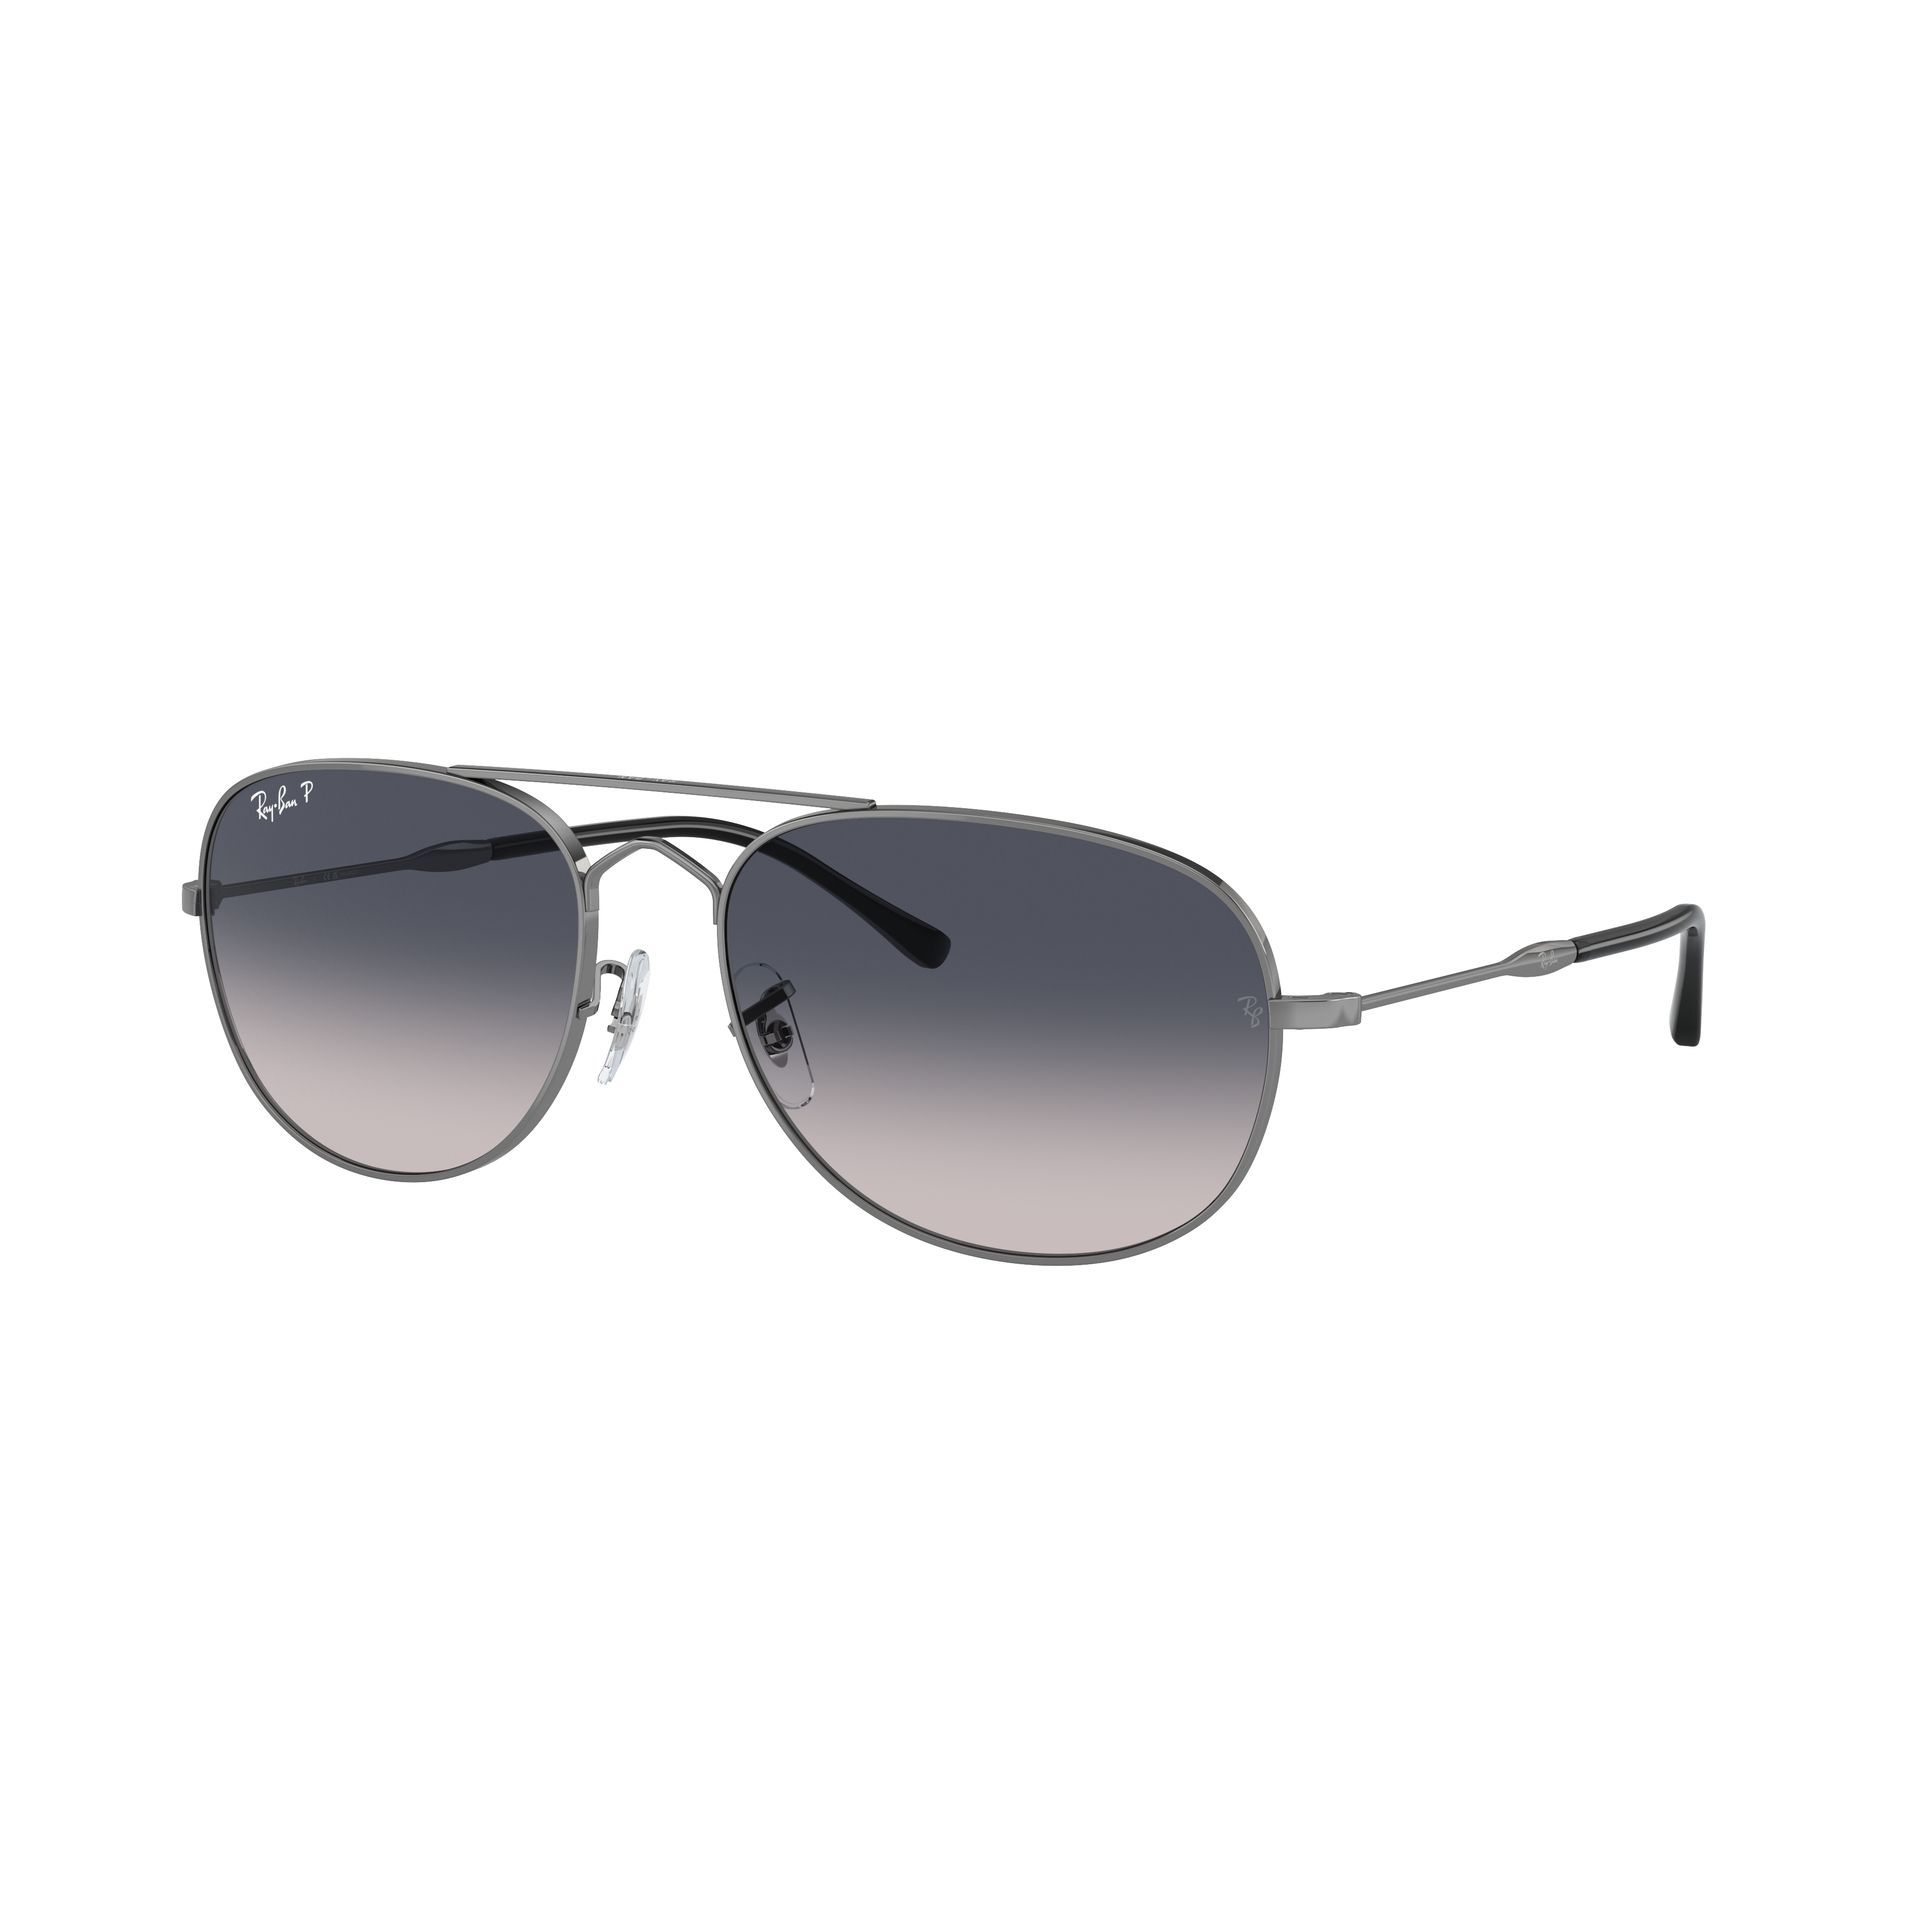 0RB3735 Pilot Sunglasses 004 78 - size 57